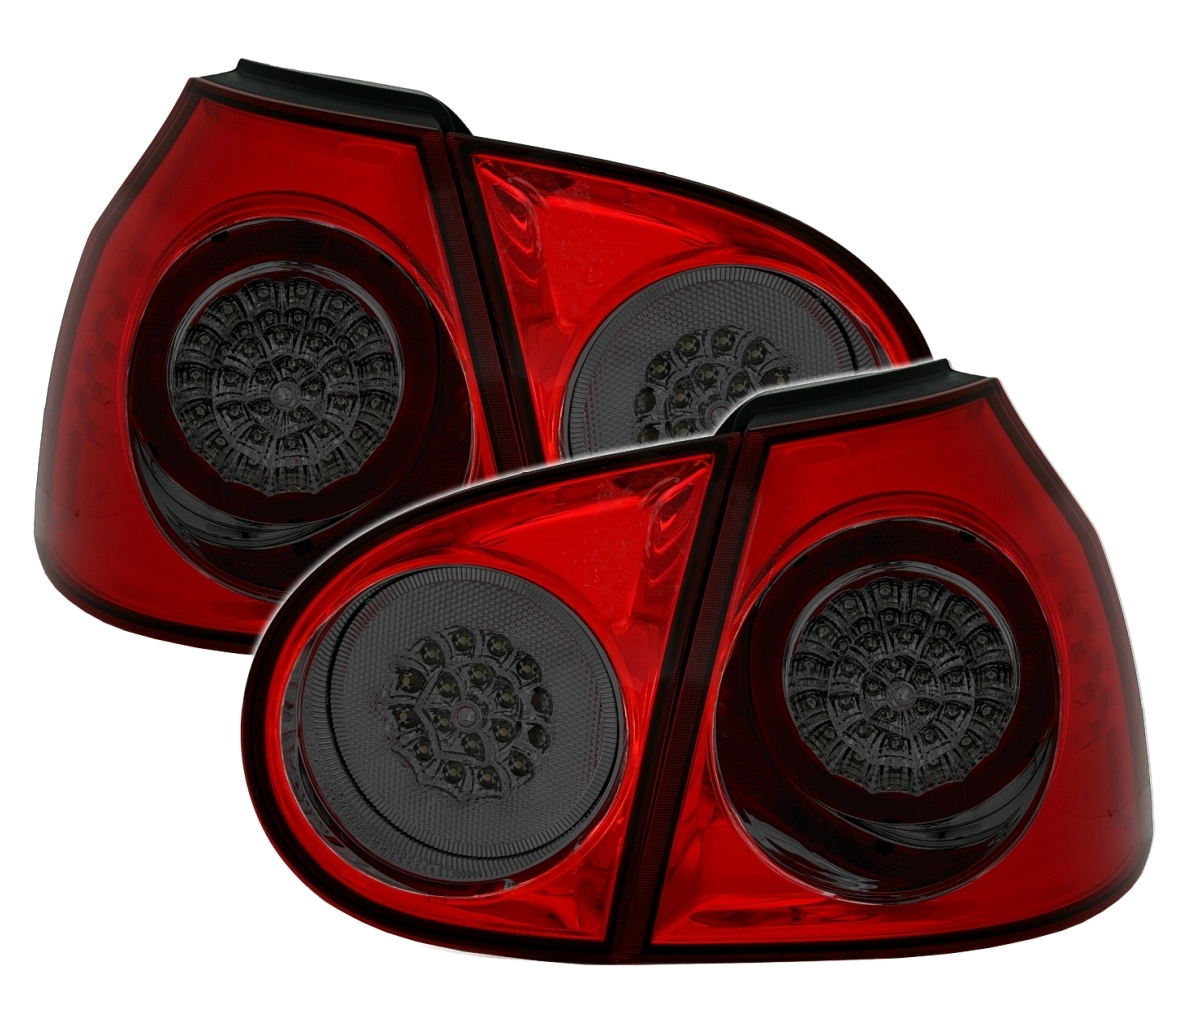 Rote LED Rückleuchten für Golf 5 6 Break - Rot Weiß